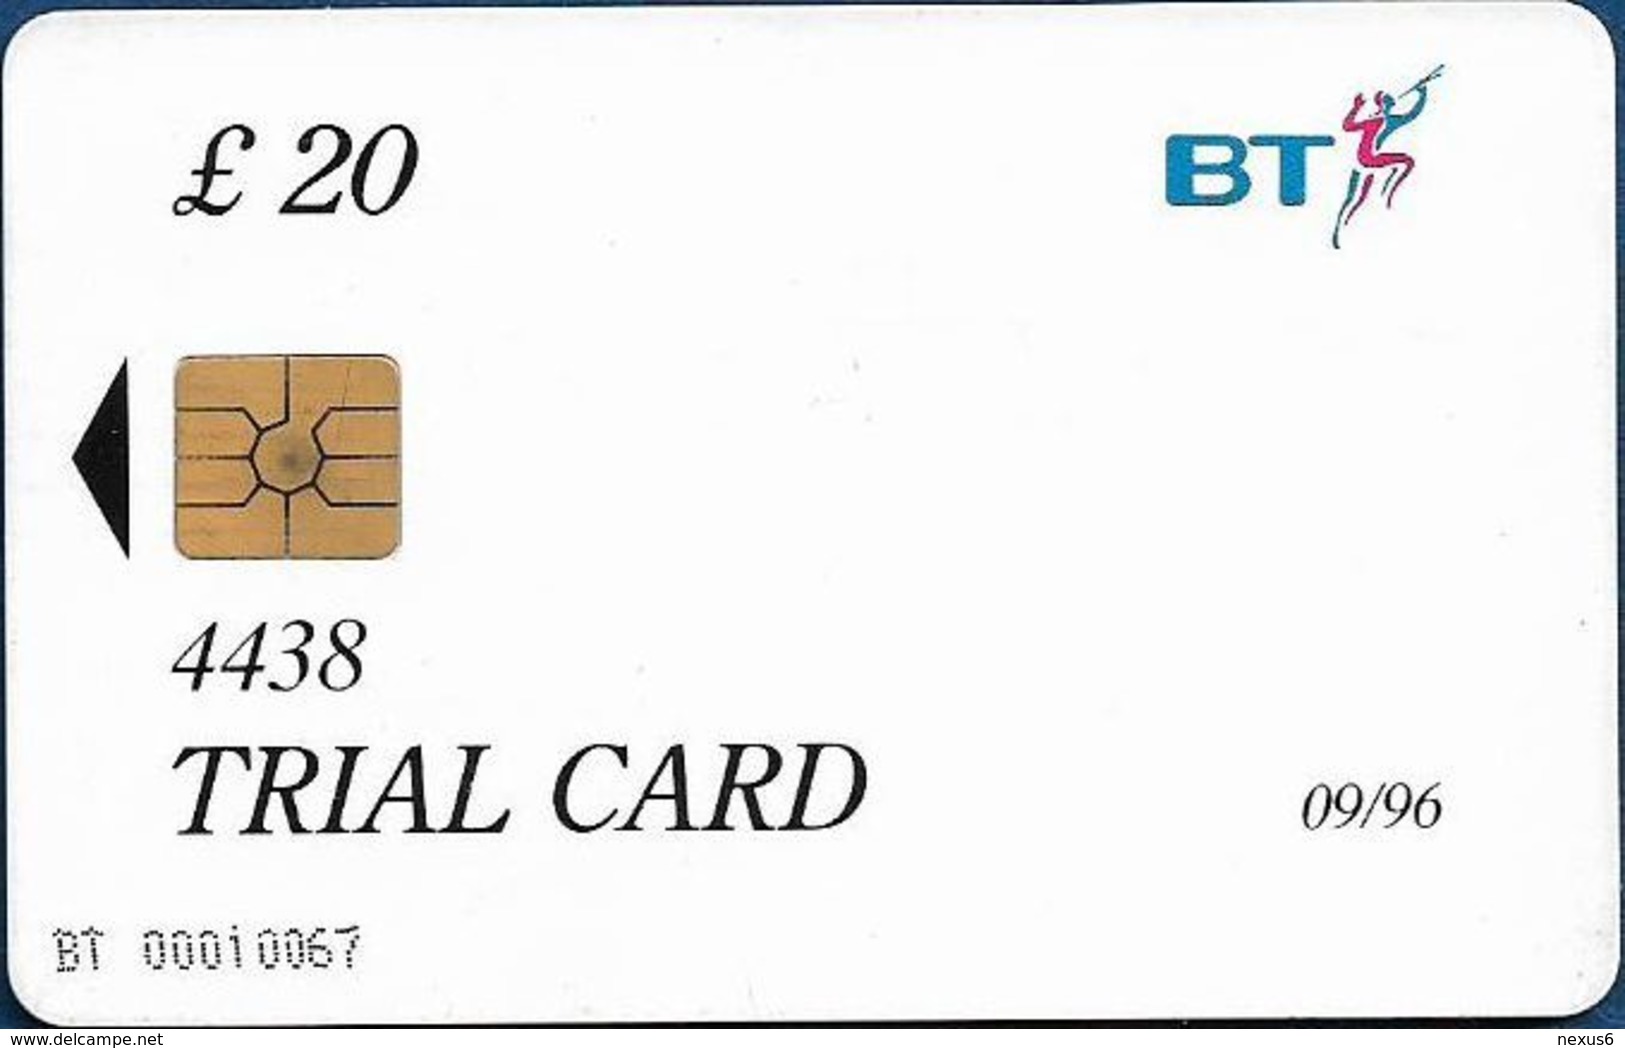 UK - BT - BCF - Rose Trial Card 20£, TRL016a (With Date, Written 4438, Big Gemplus), 09.1996, 2.000ex, Used - BT Dienst Und Test